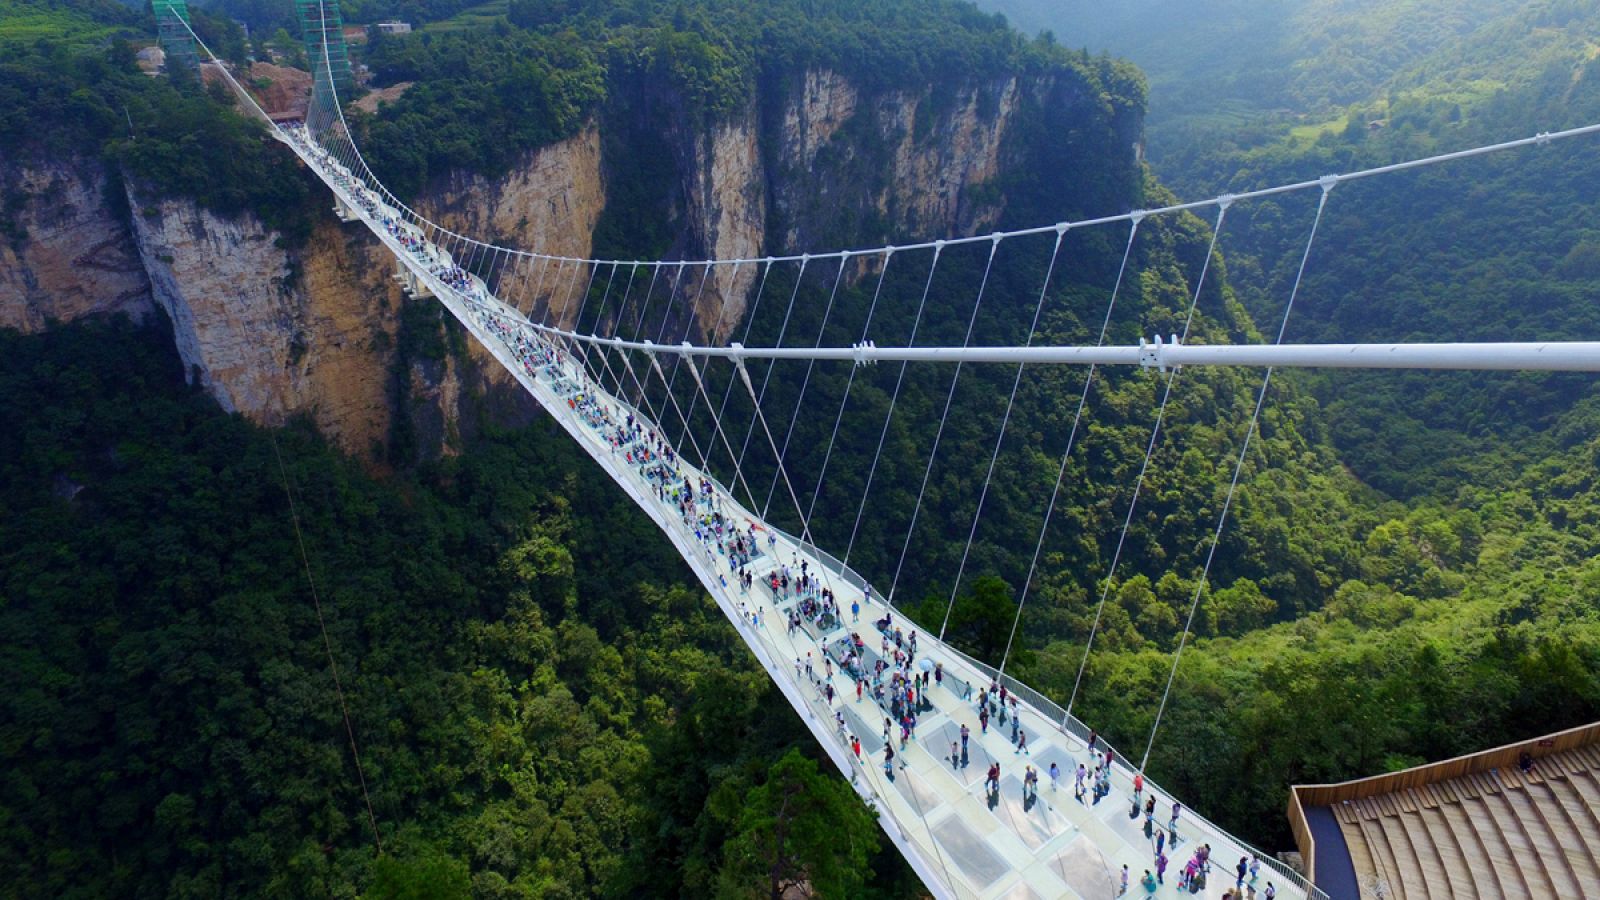 El puente de cristal más largo y alto del mundo se encuentra sobre el Parque natural de Zhangijajlie, en la provincia china de Hunan.